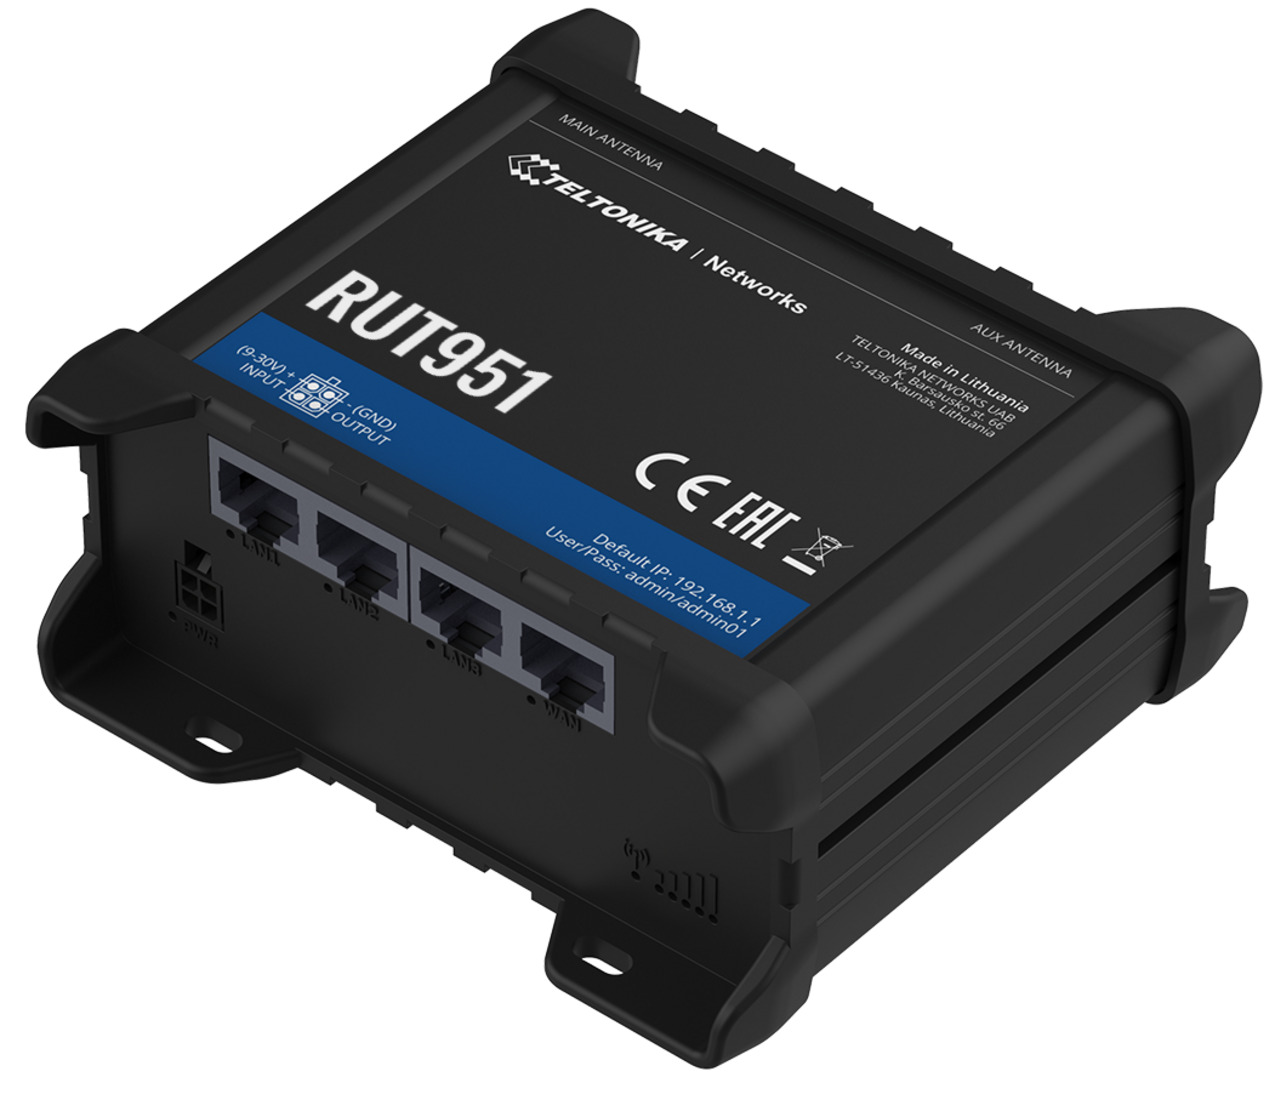 RUT 951 - 4G LTE WI-FI Dual-Sim Router